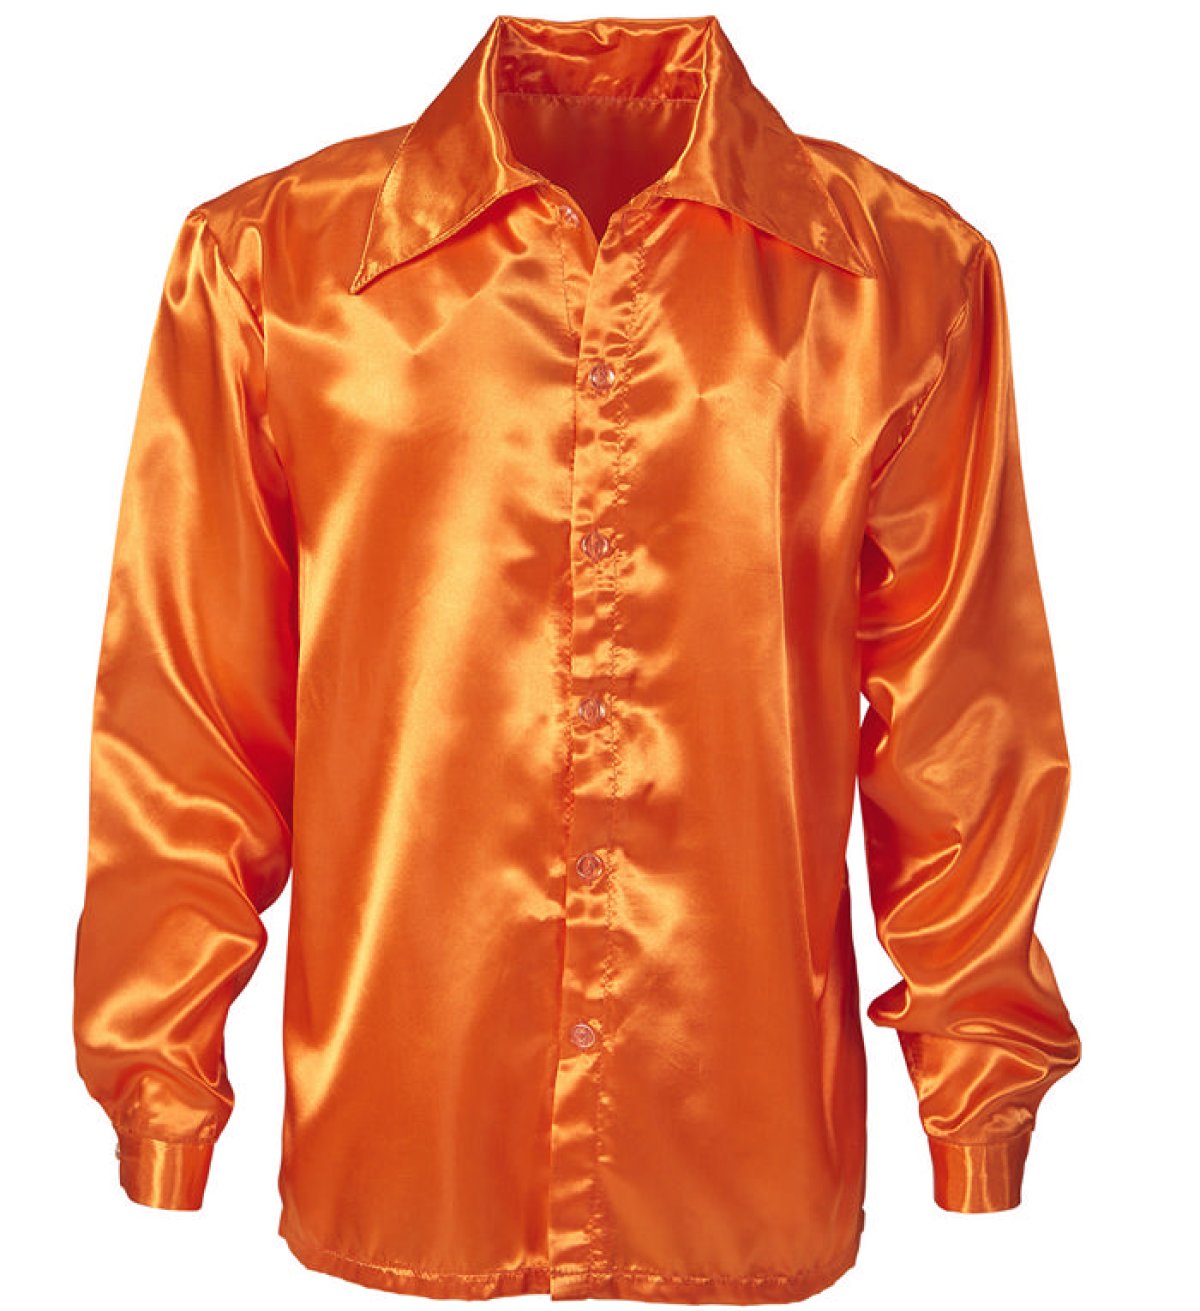 Køb Orange Satin 70'er Disko Skjorte til kun 199 kr |